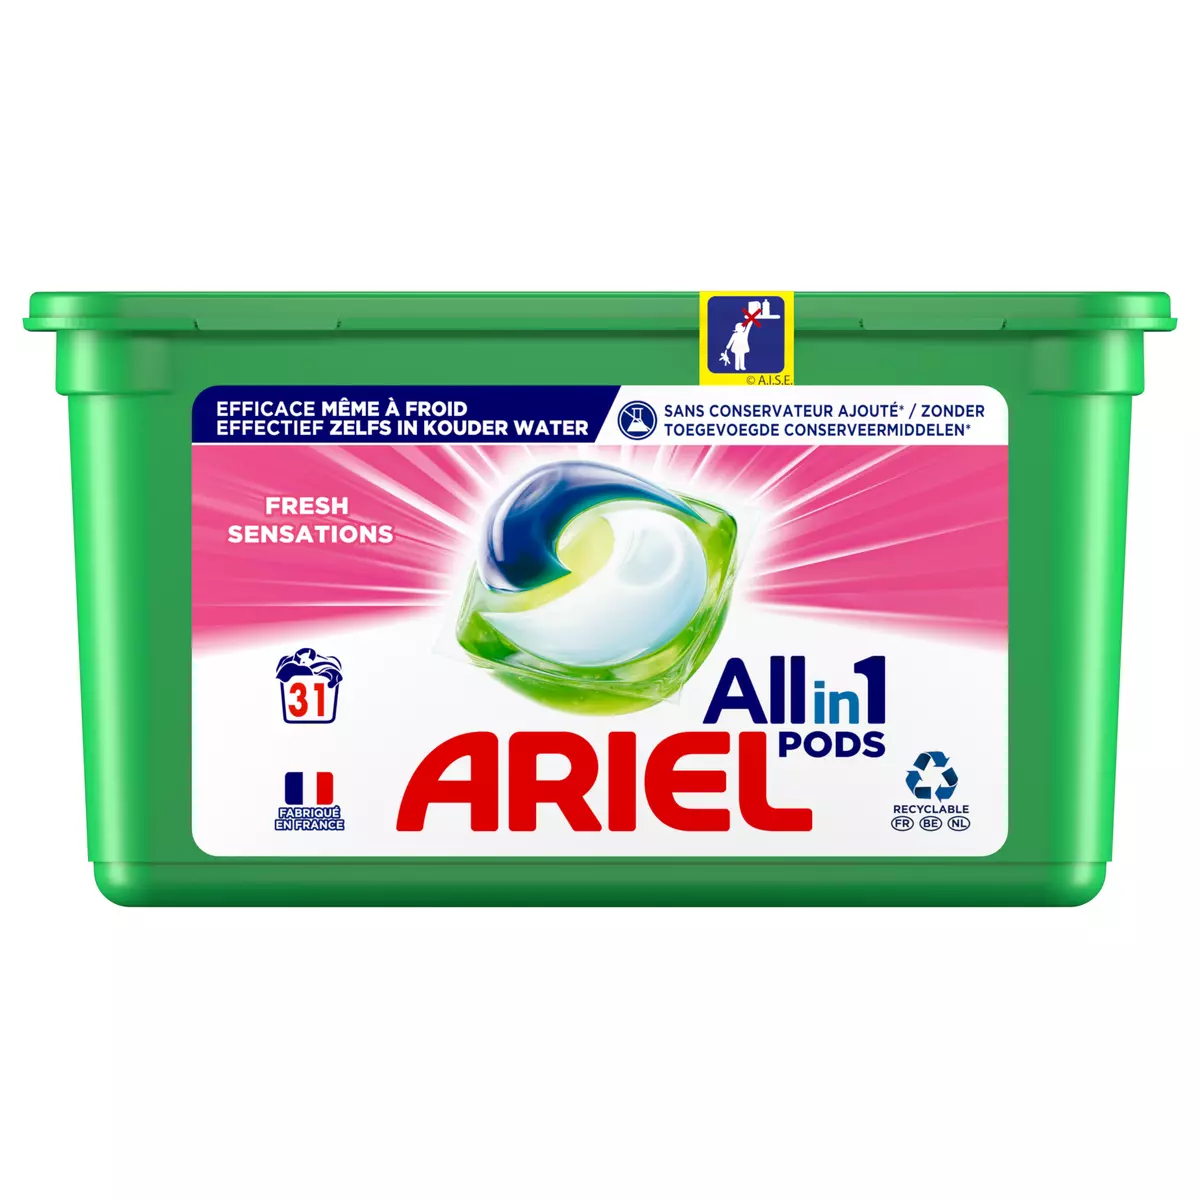 ARIEL Pods capsules de lessive tout en 1 fresh sensations 31 capsules